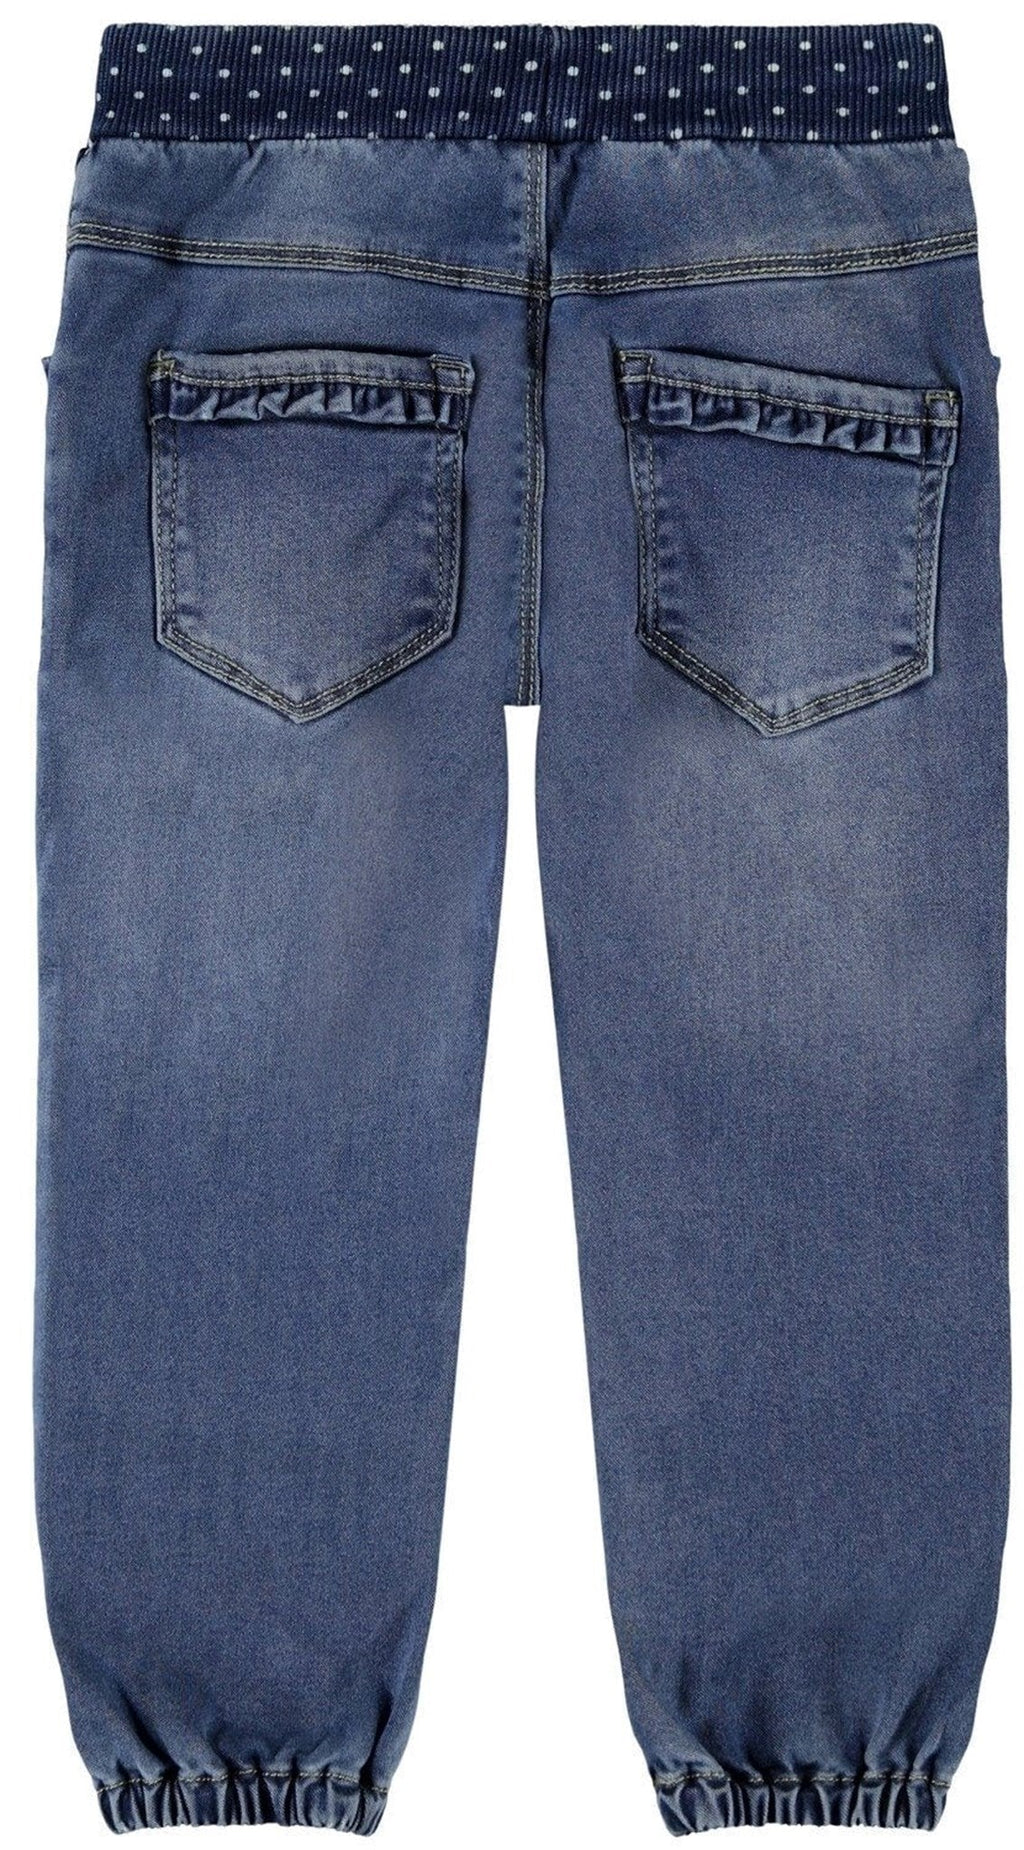 Bibi jeans - Blue denim